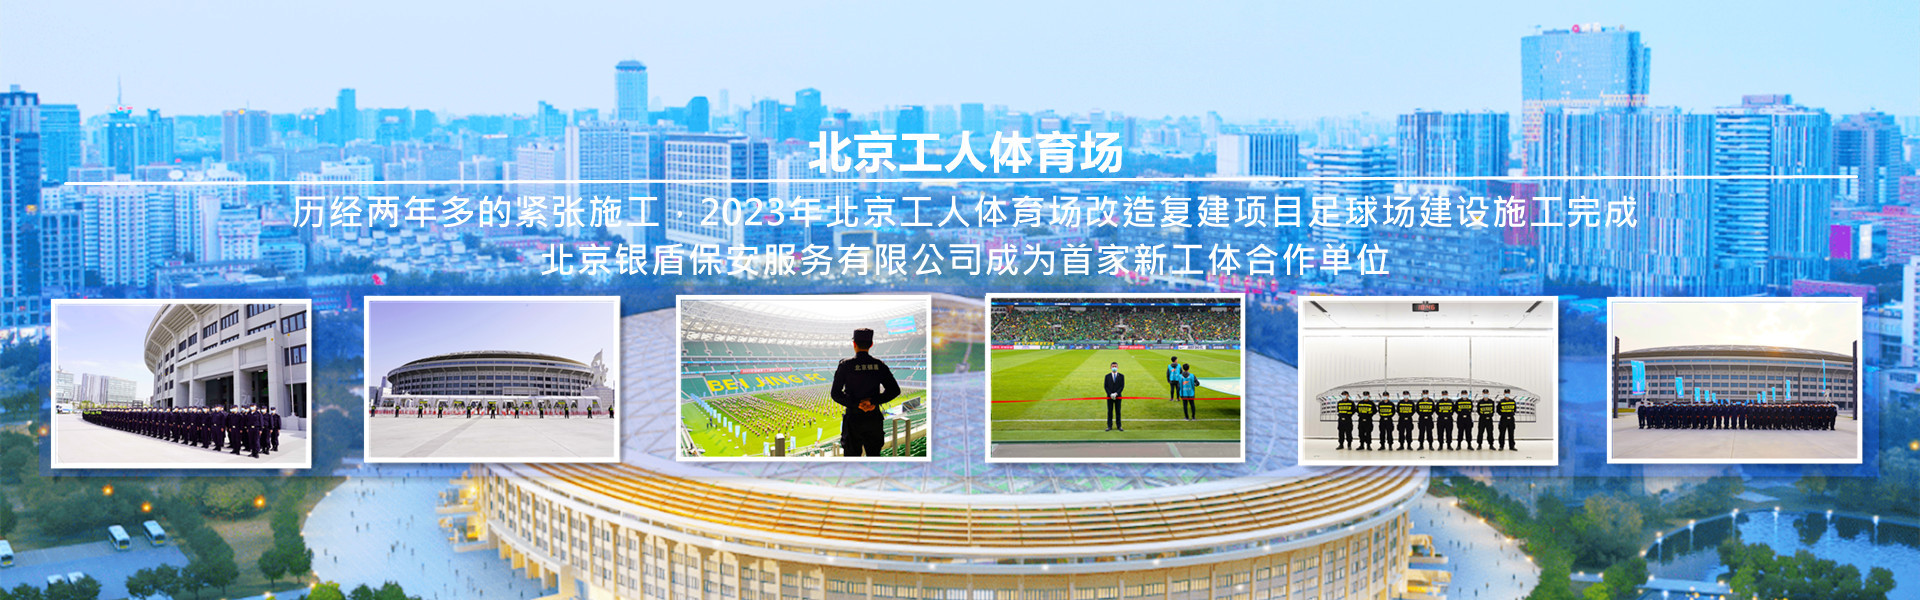 四海资讯网址为北京工人体育场提供安全守卫